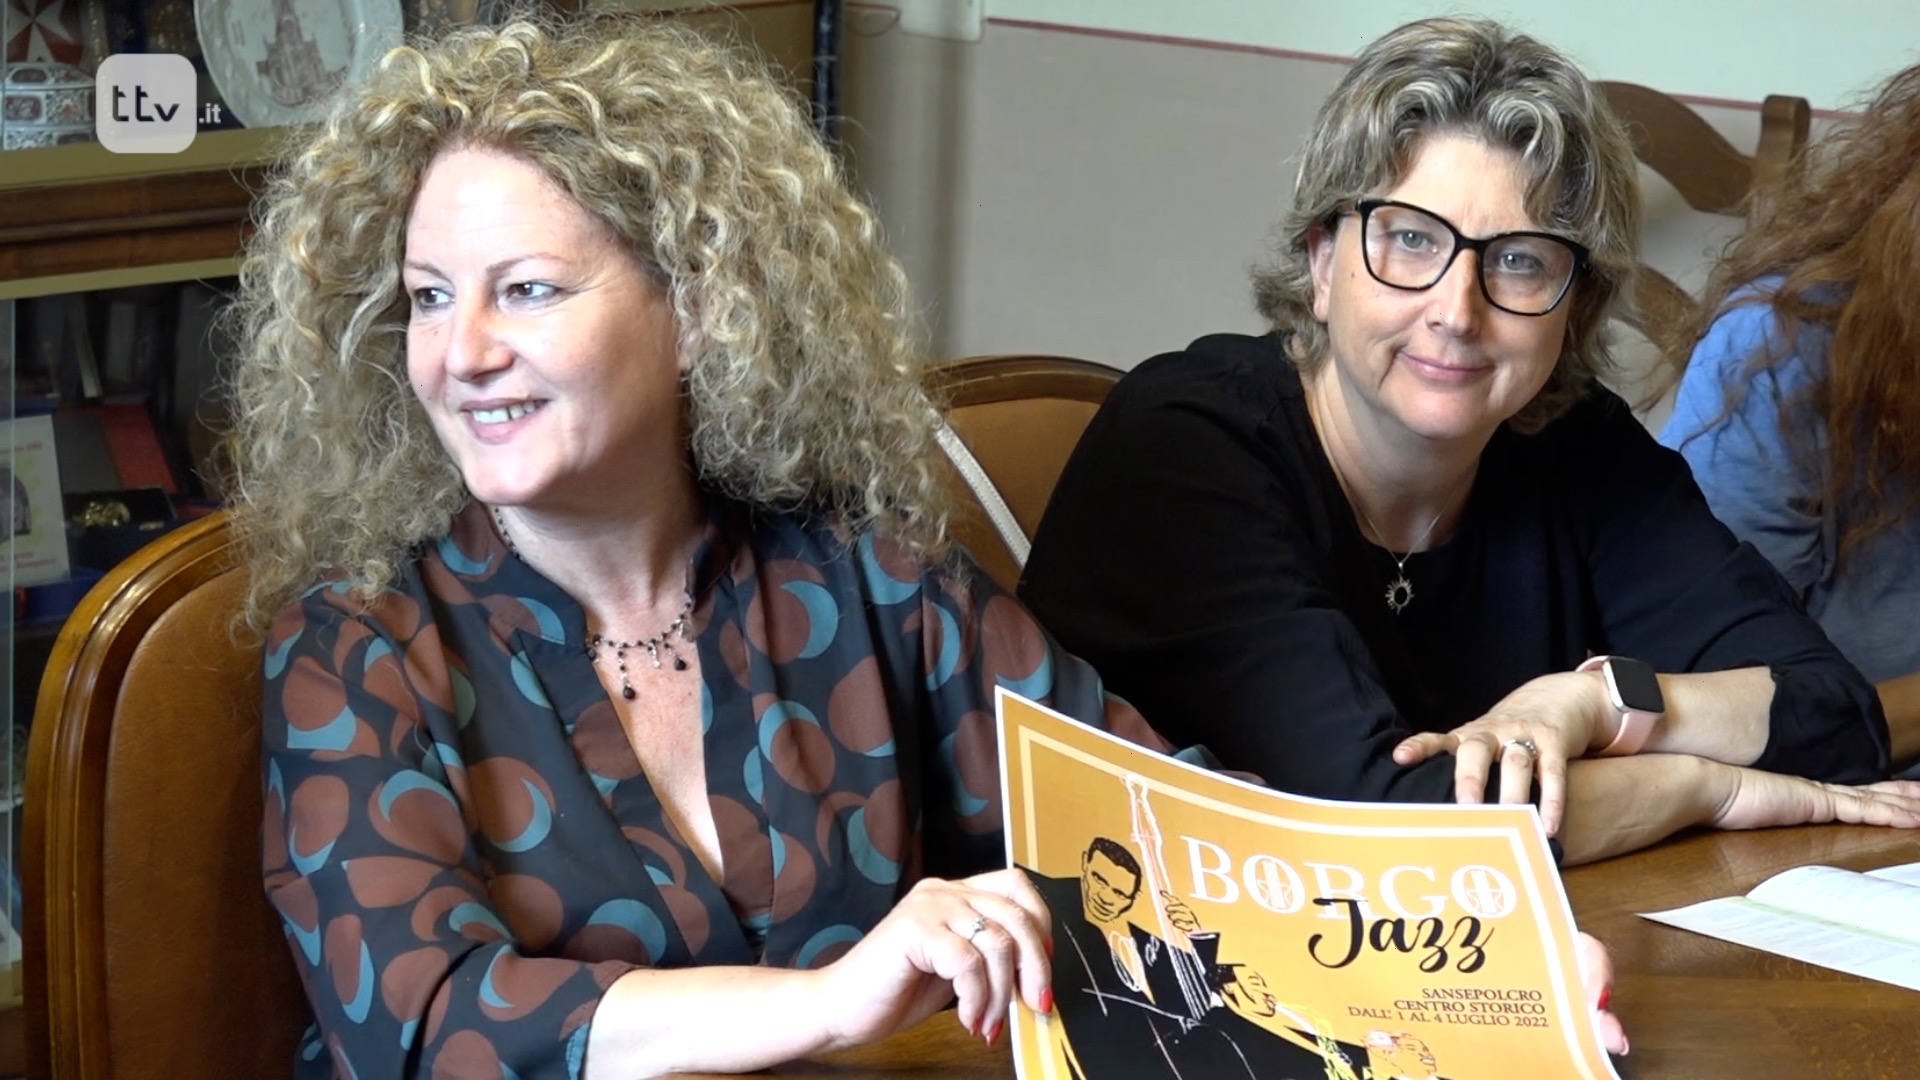 Sonia Fortunato e Lucia Cristini Borgo Jazz